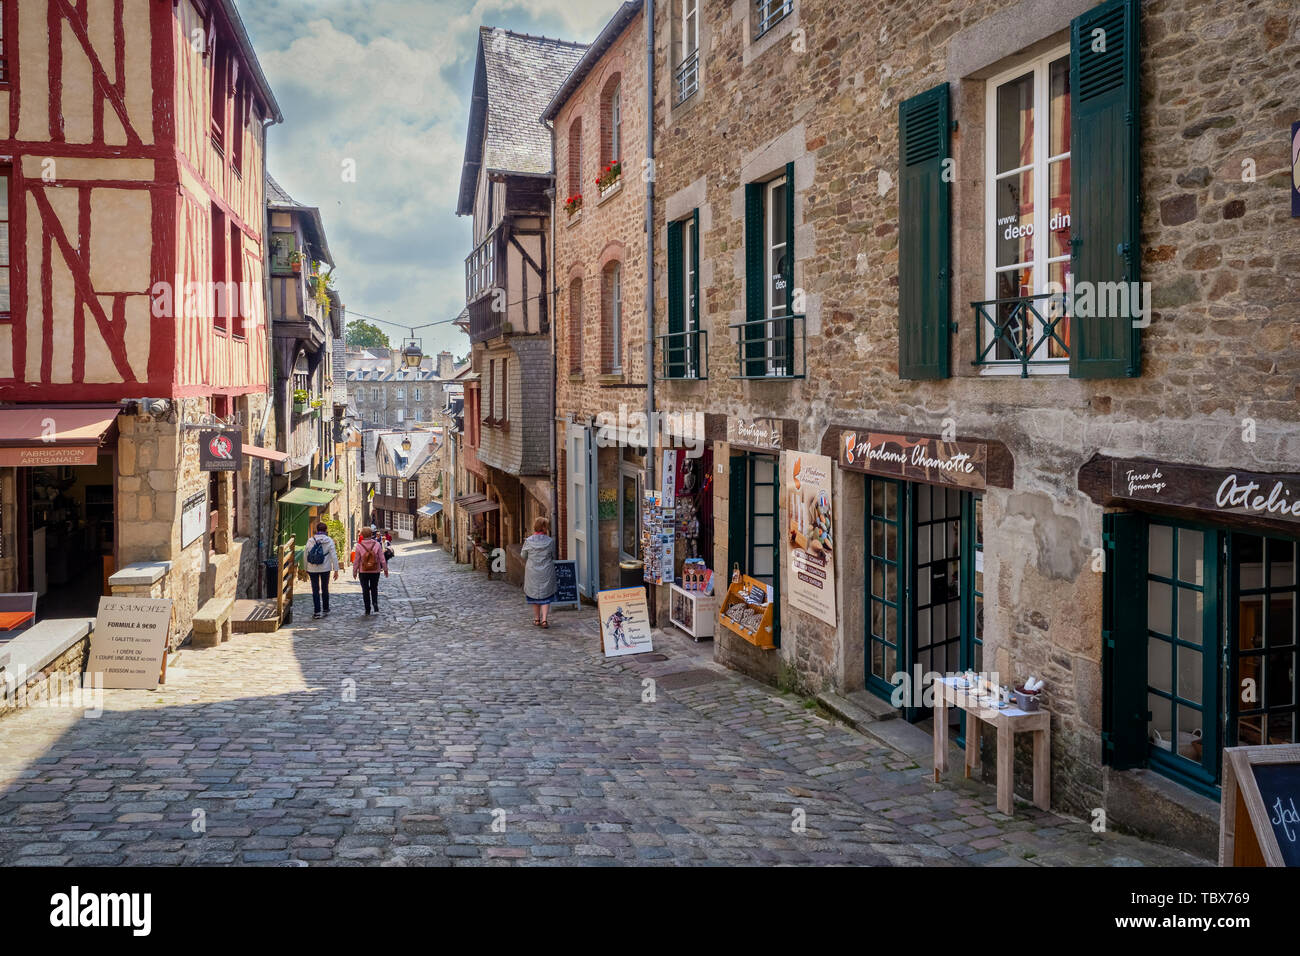 24.05.19 Dinan, Bretagne, Frankreich, Beschreibung Dinan ist eine Stadt in der Bretagne im Nordwesten Frankreichs. Es ist bekannt für seinen mittelalterlichen Stadtmauer, gepflasterten Straßen Stockfoto